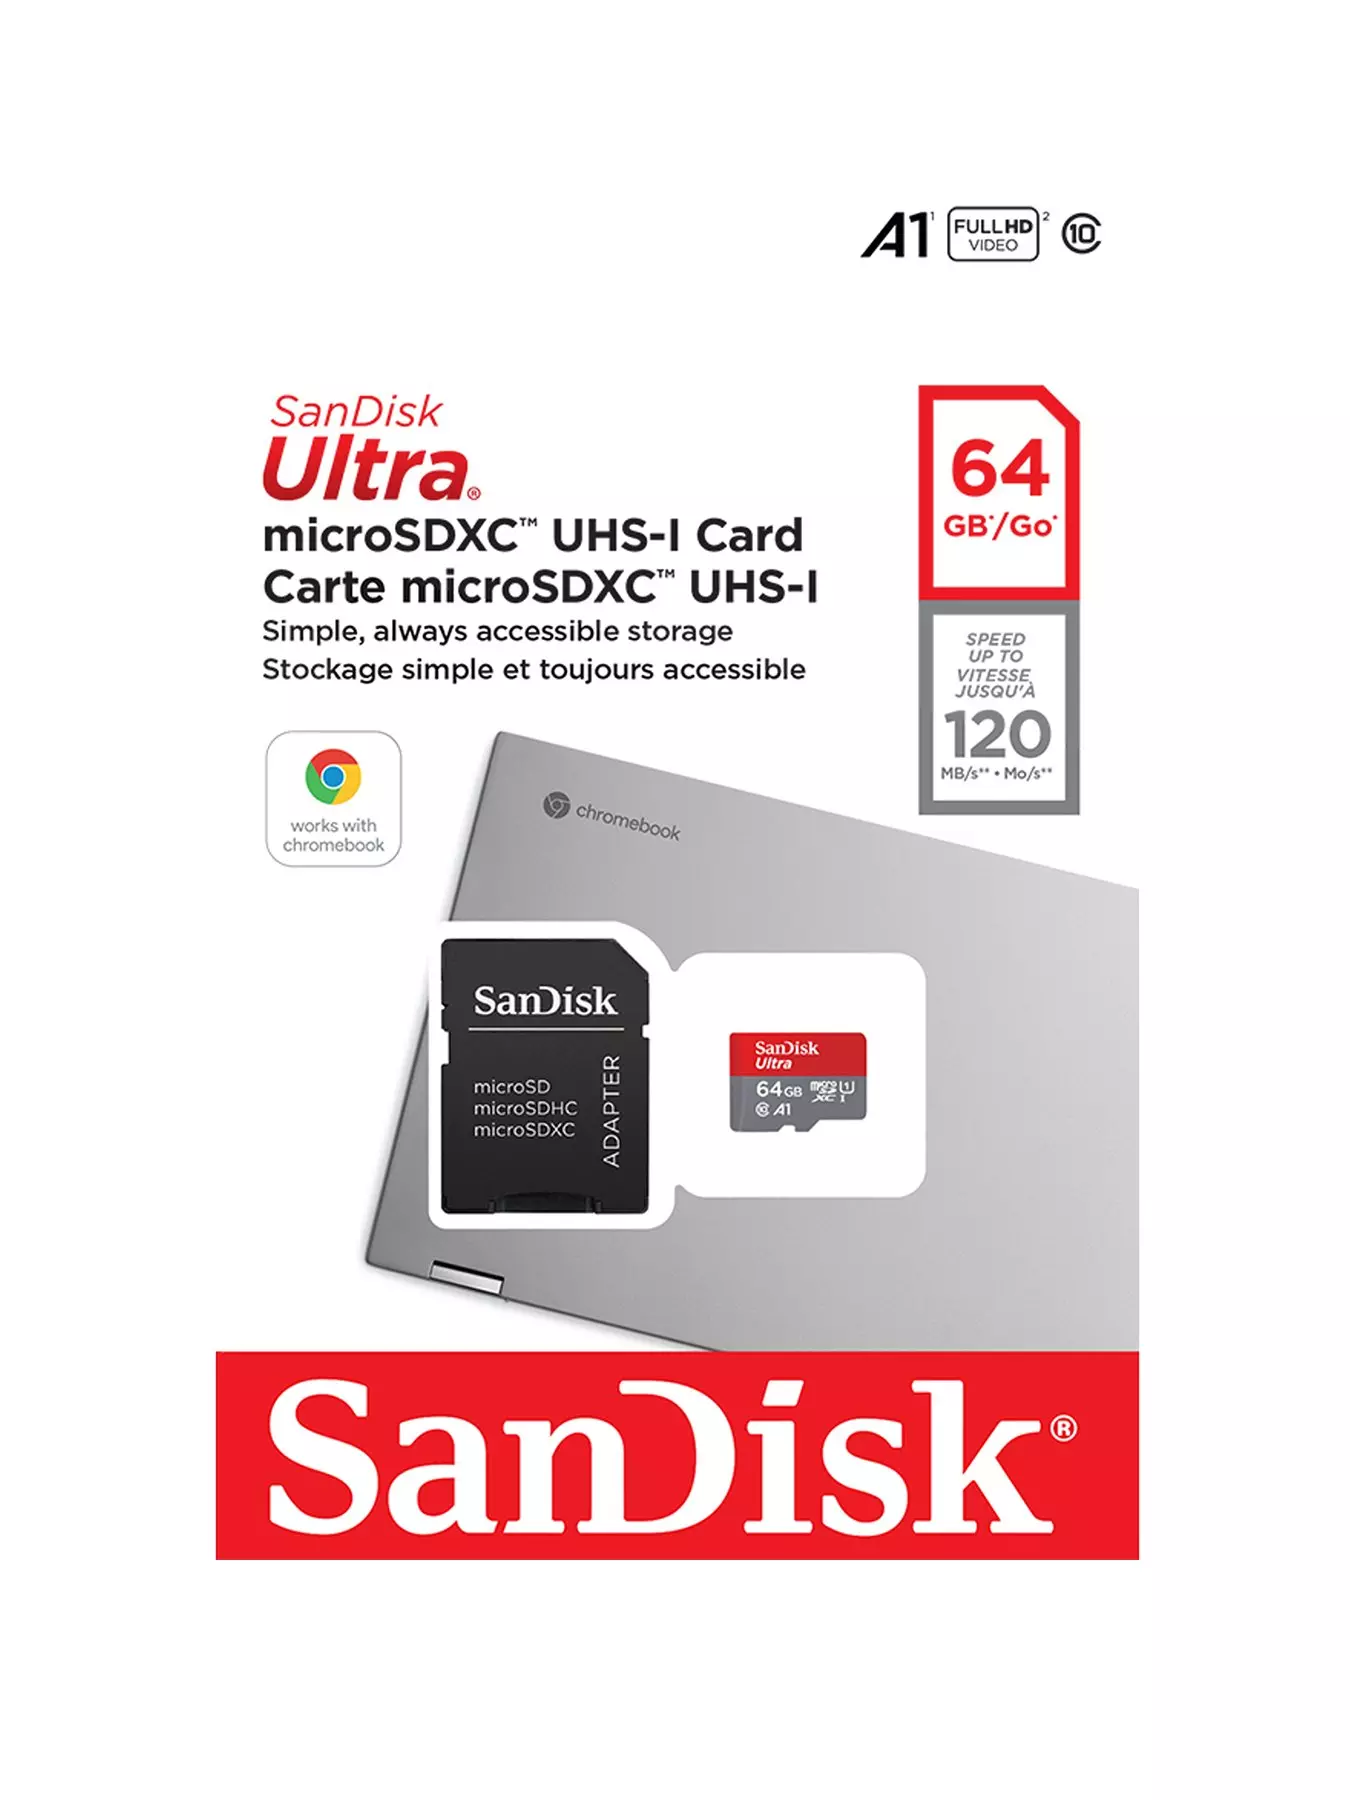 SanDisk Ultra Nouveau 32 Go micro SDHC Flash Carte Mémoire 100MB/s Classe  10